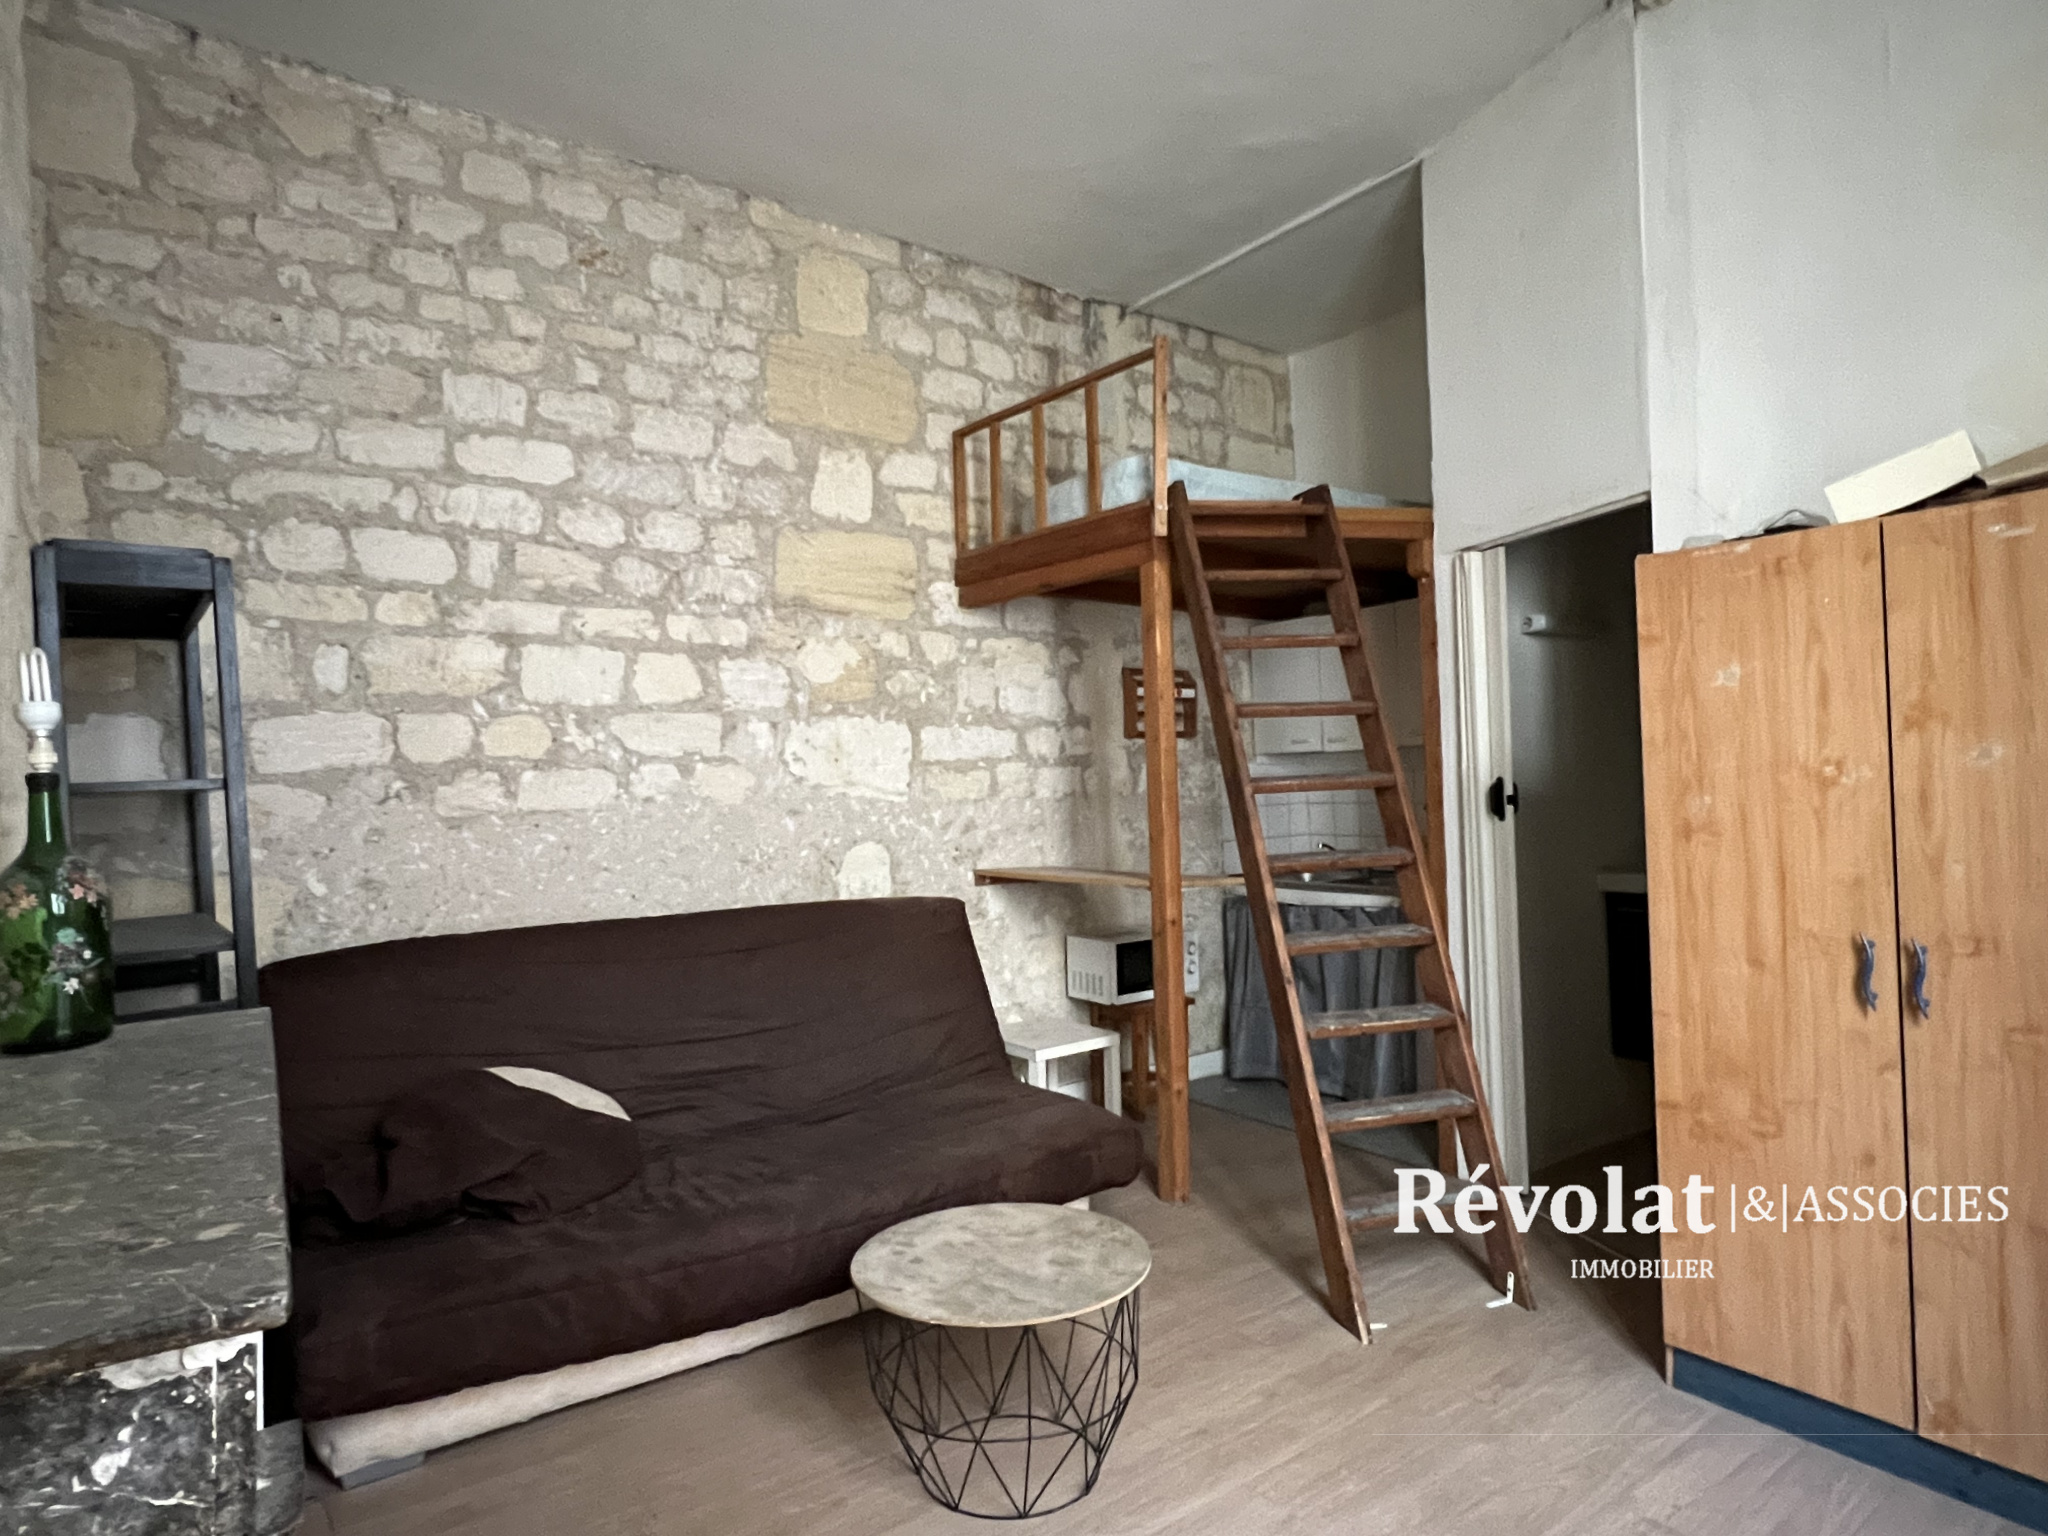 Vente Appartement 20m² 1 Pièce à Bordeaux (33800) - Révolat & Associés